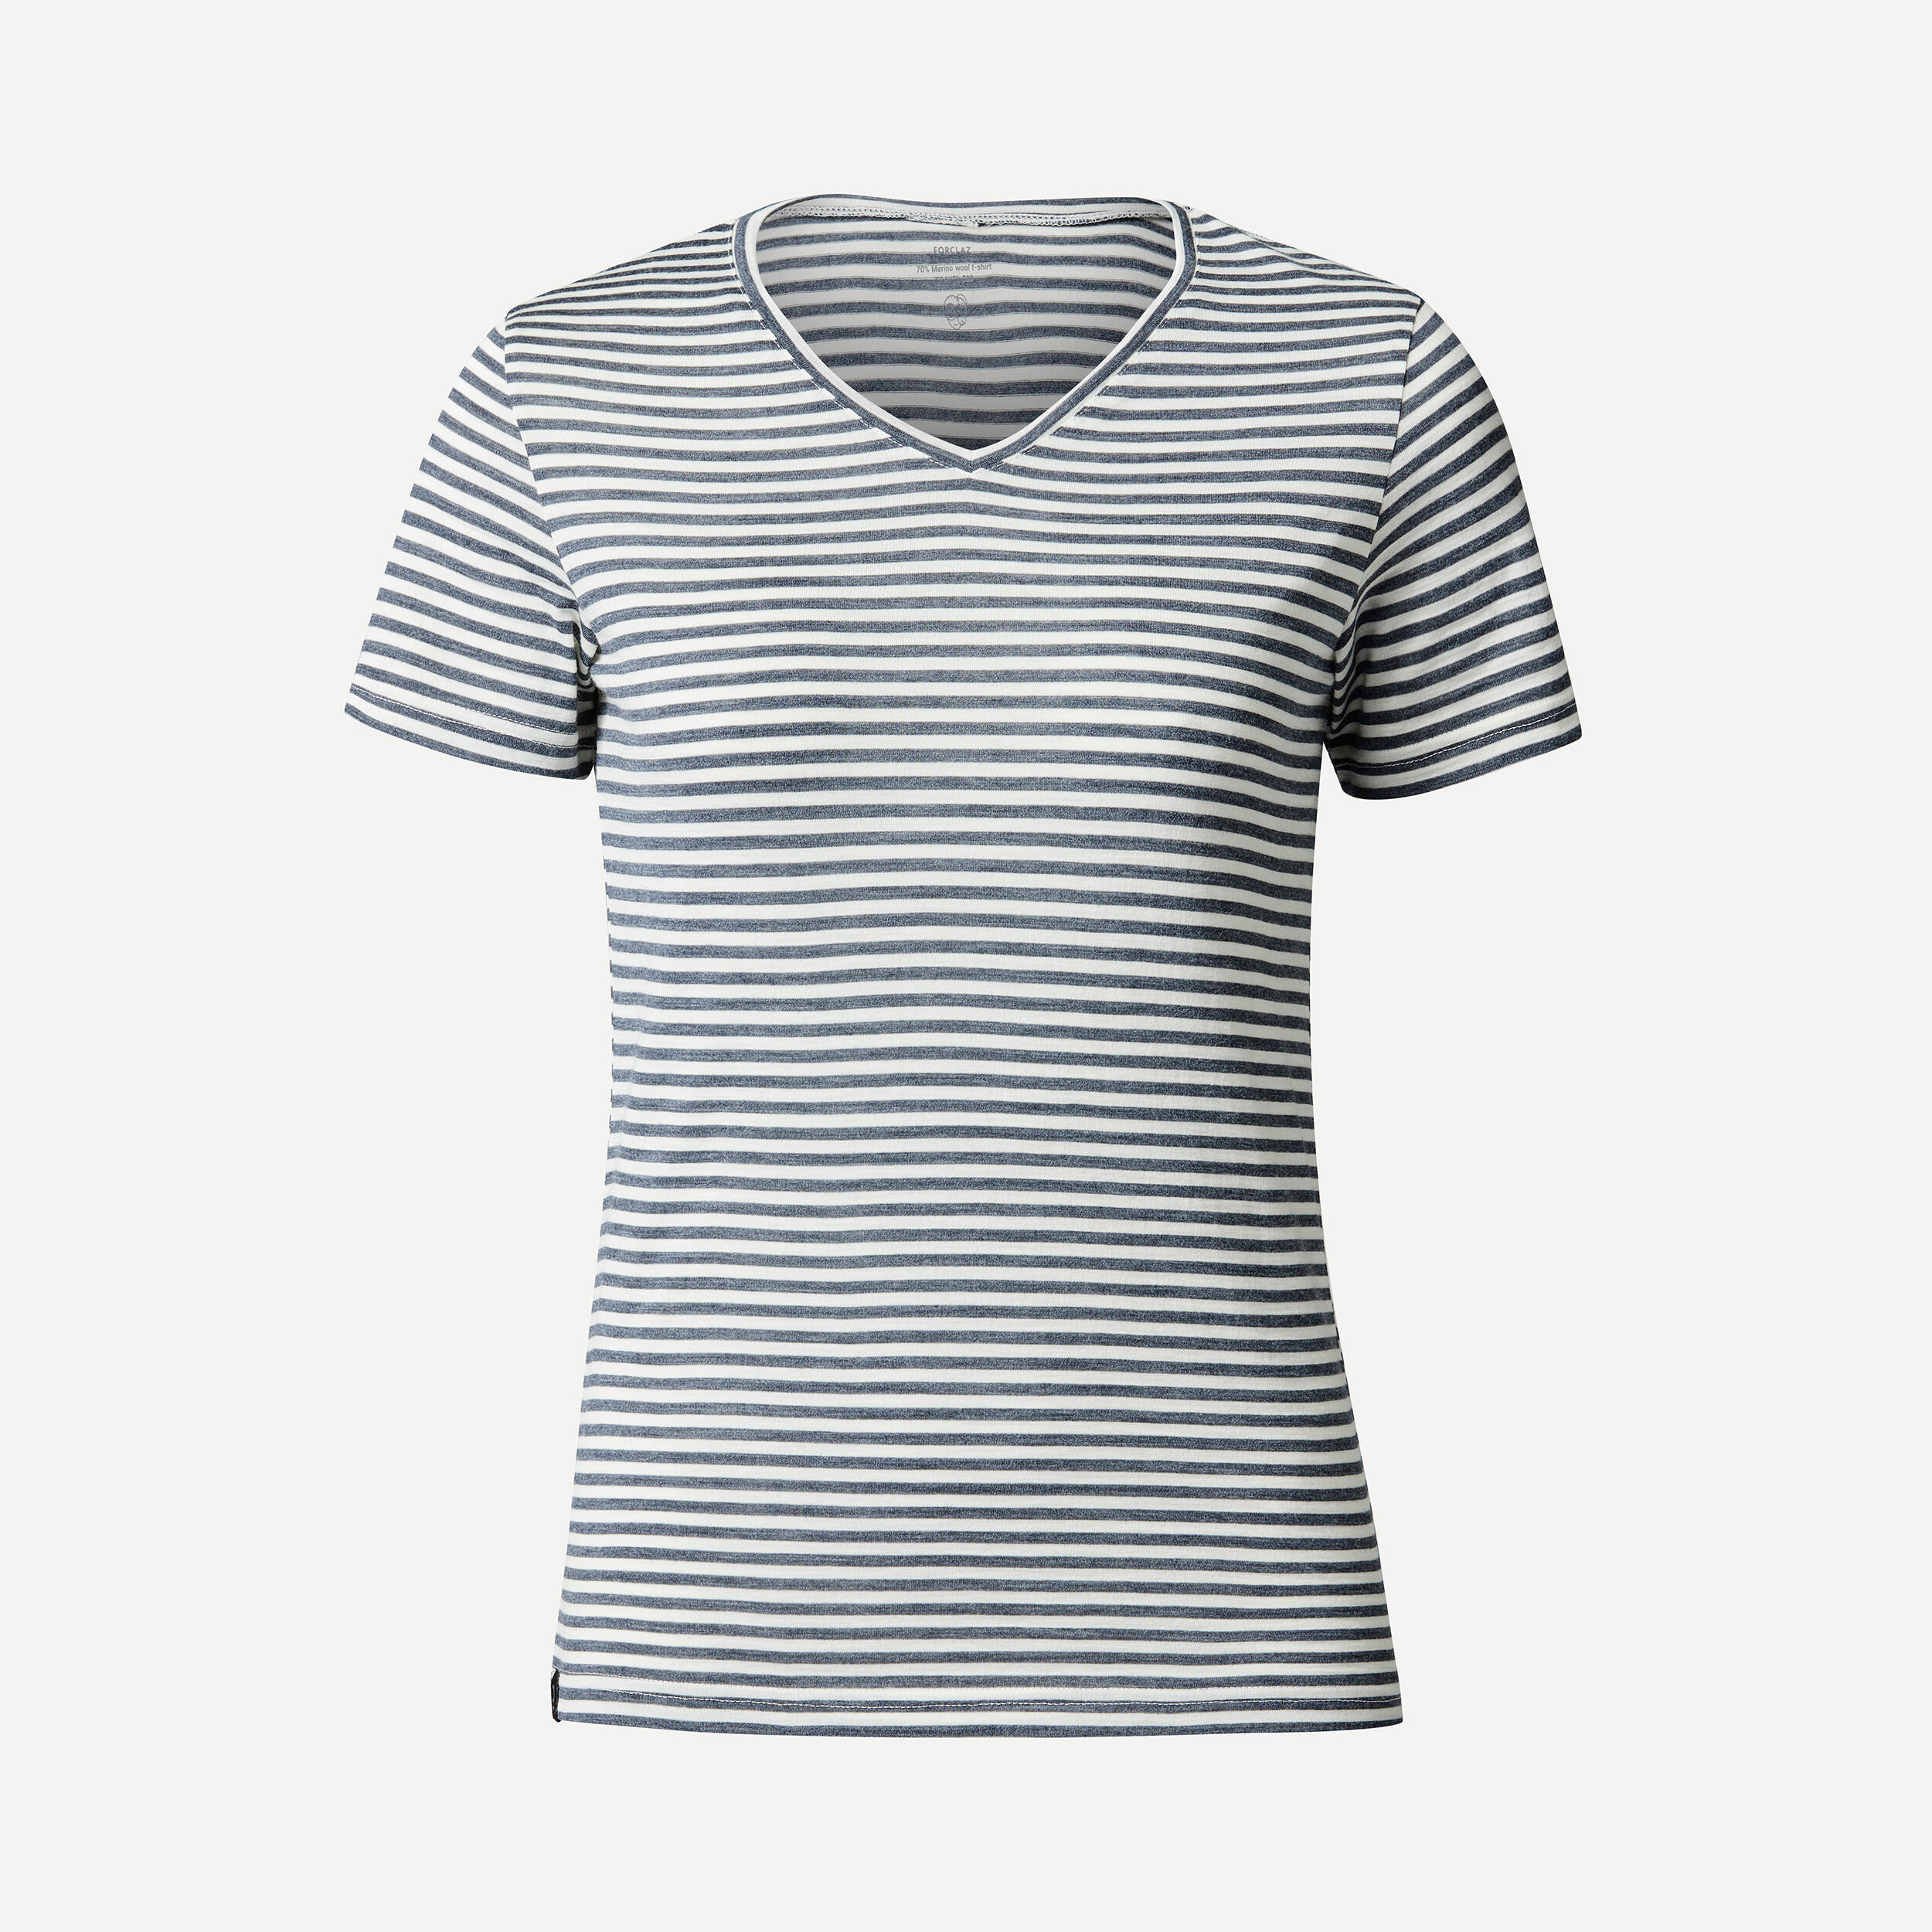 Women's Travel Trekking Merino Wool Short-Sleeved T-Shirt - TRAVEL 500 5/6